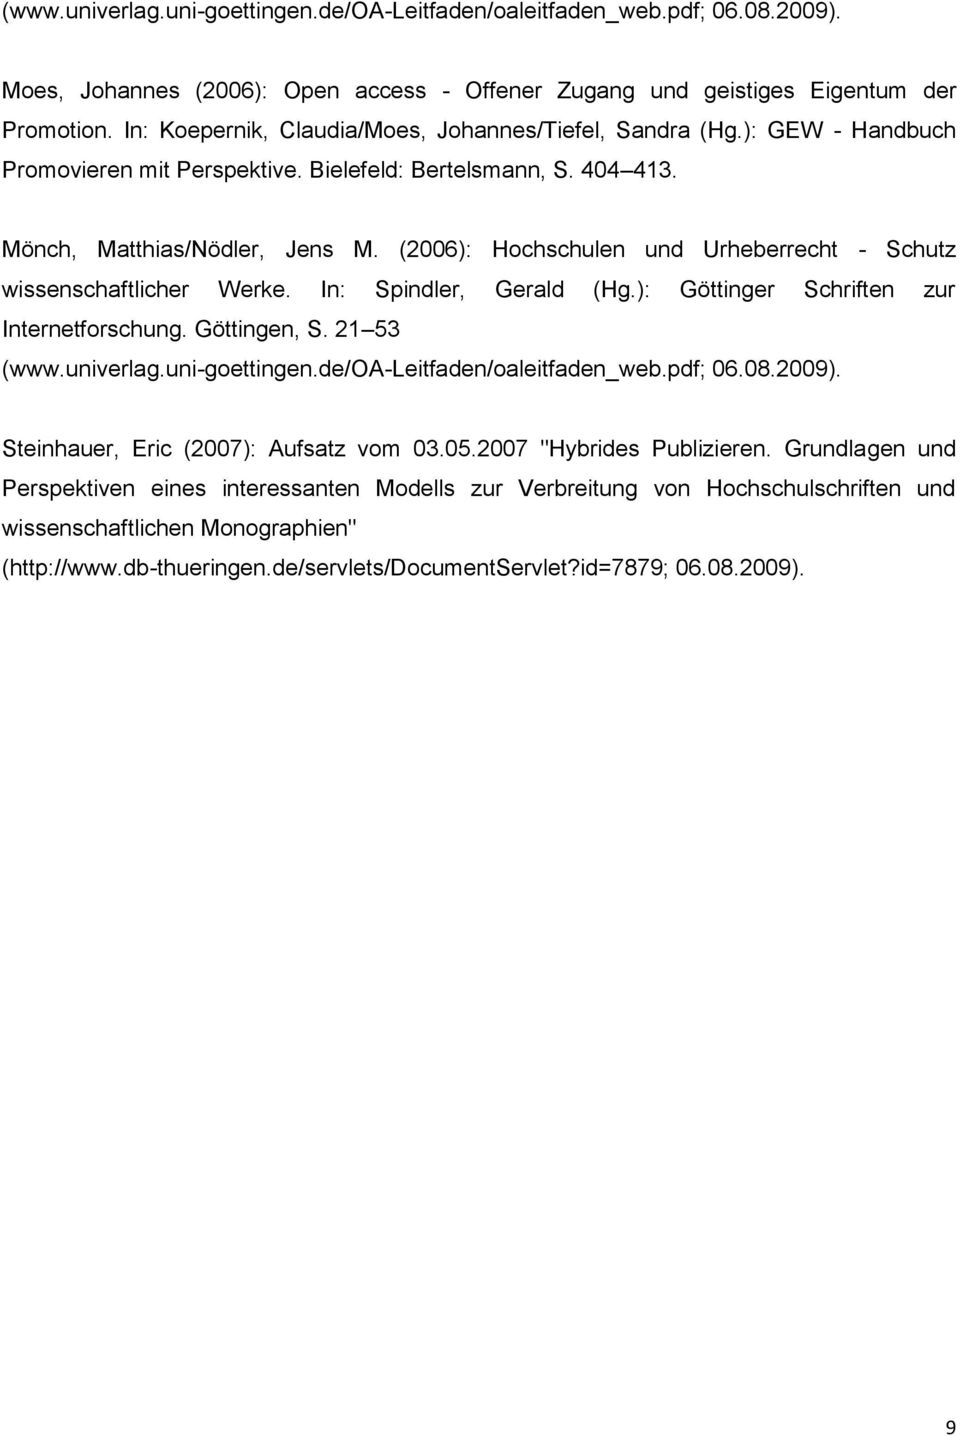 (2006): Hochschulen und Urheberrecht - Schutz wissenschaftlicher Werke. In: Spindler, Gerald (Hg.): Göttinger Schriften zur Internetforschung. Göttingen, S. 21 53 (www.univerlag.uni-goettingen.